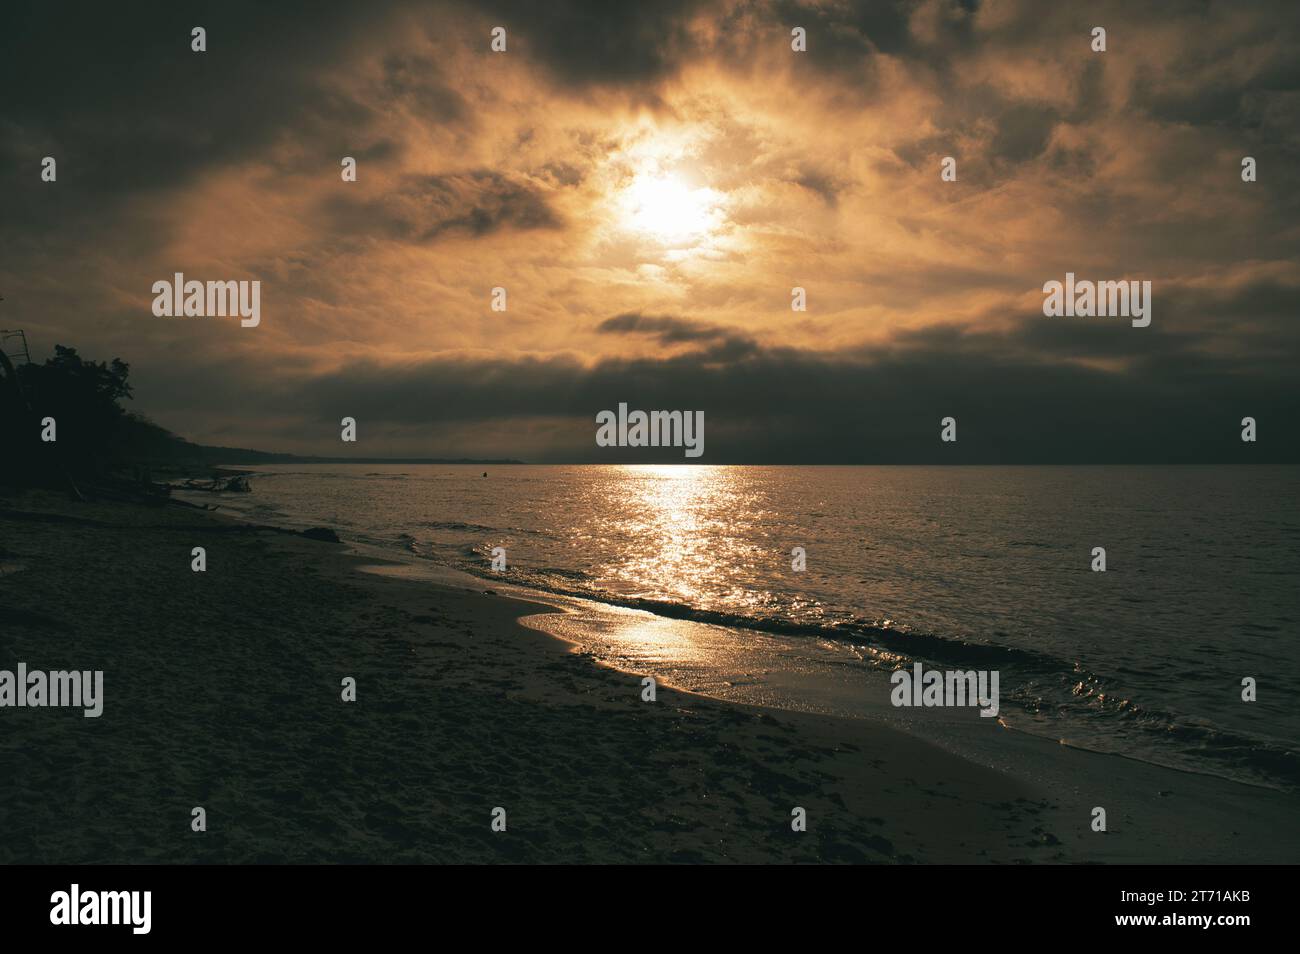 Coucher de soleil sur la plage ouest sur la mer Baltique. Vagues, plage, ciel nuageux et derniers rayons de soleil sur la côte. Photo paysage Banque D'Images